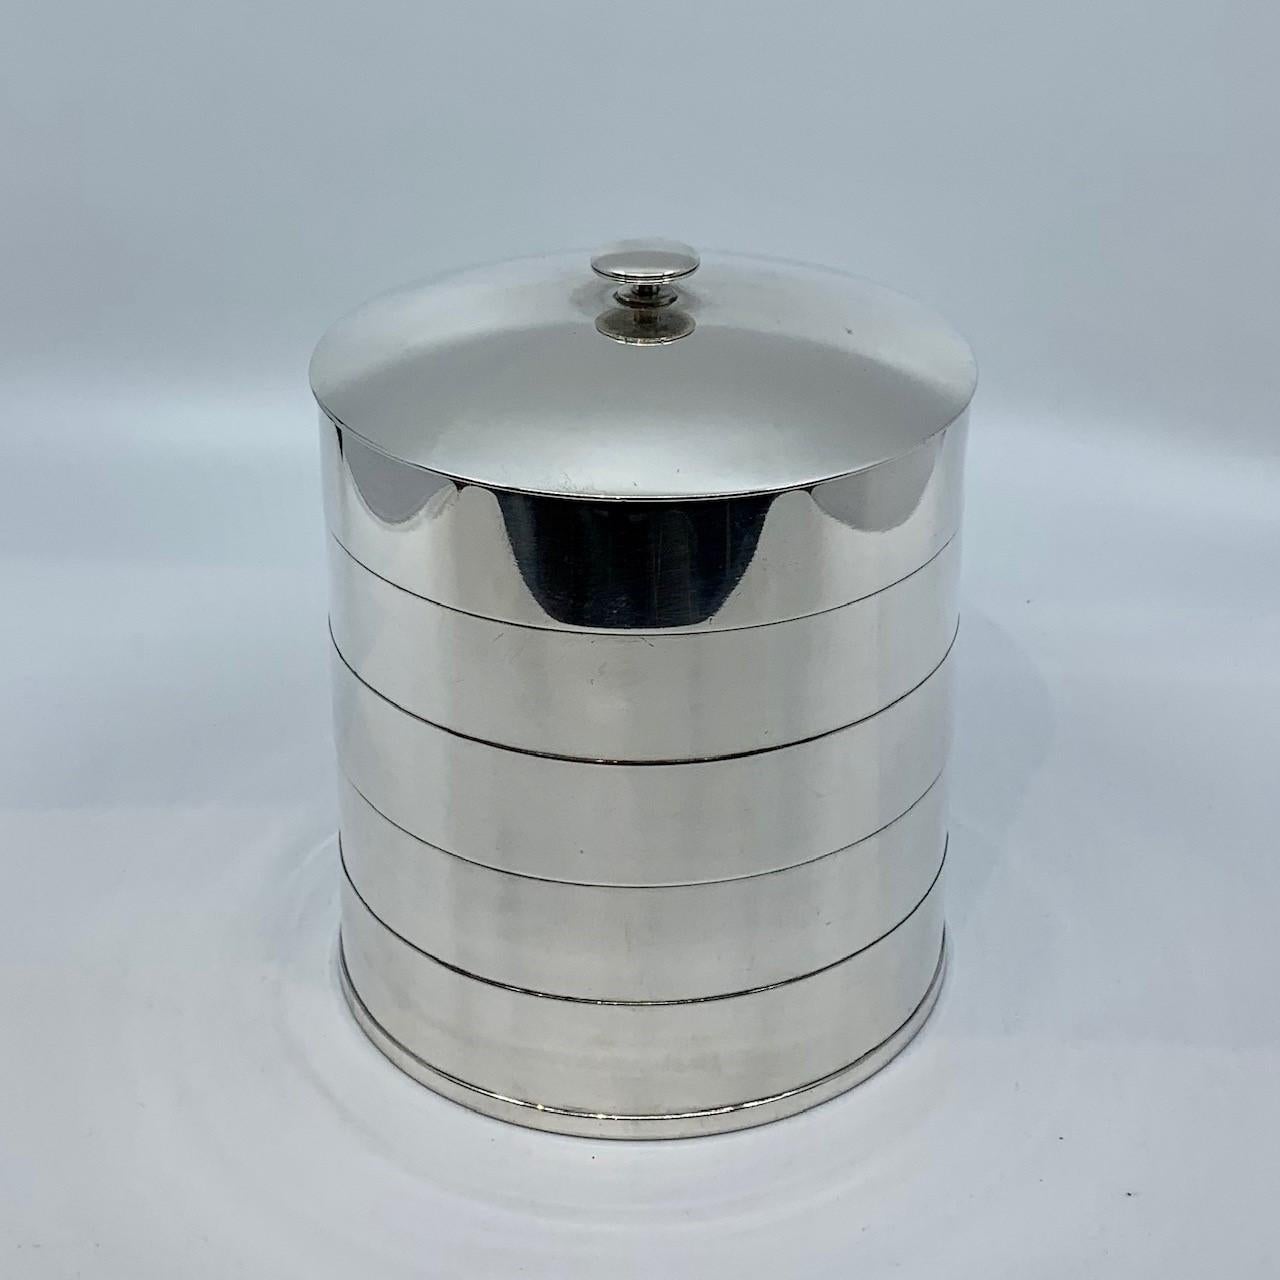 Ein Vintage Sterling Silber Georg Jensen Art Deco Keksdose, entworfen von Jorgen Jensen um 1935. Der Körper ist eine runde Zylinderform, die mit vier oxidierten Linien verziert ist. Die Oberseite ist geschwungen und hat einen einfachen Deko-Griff.